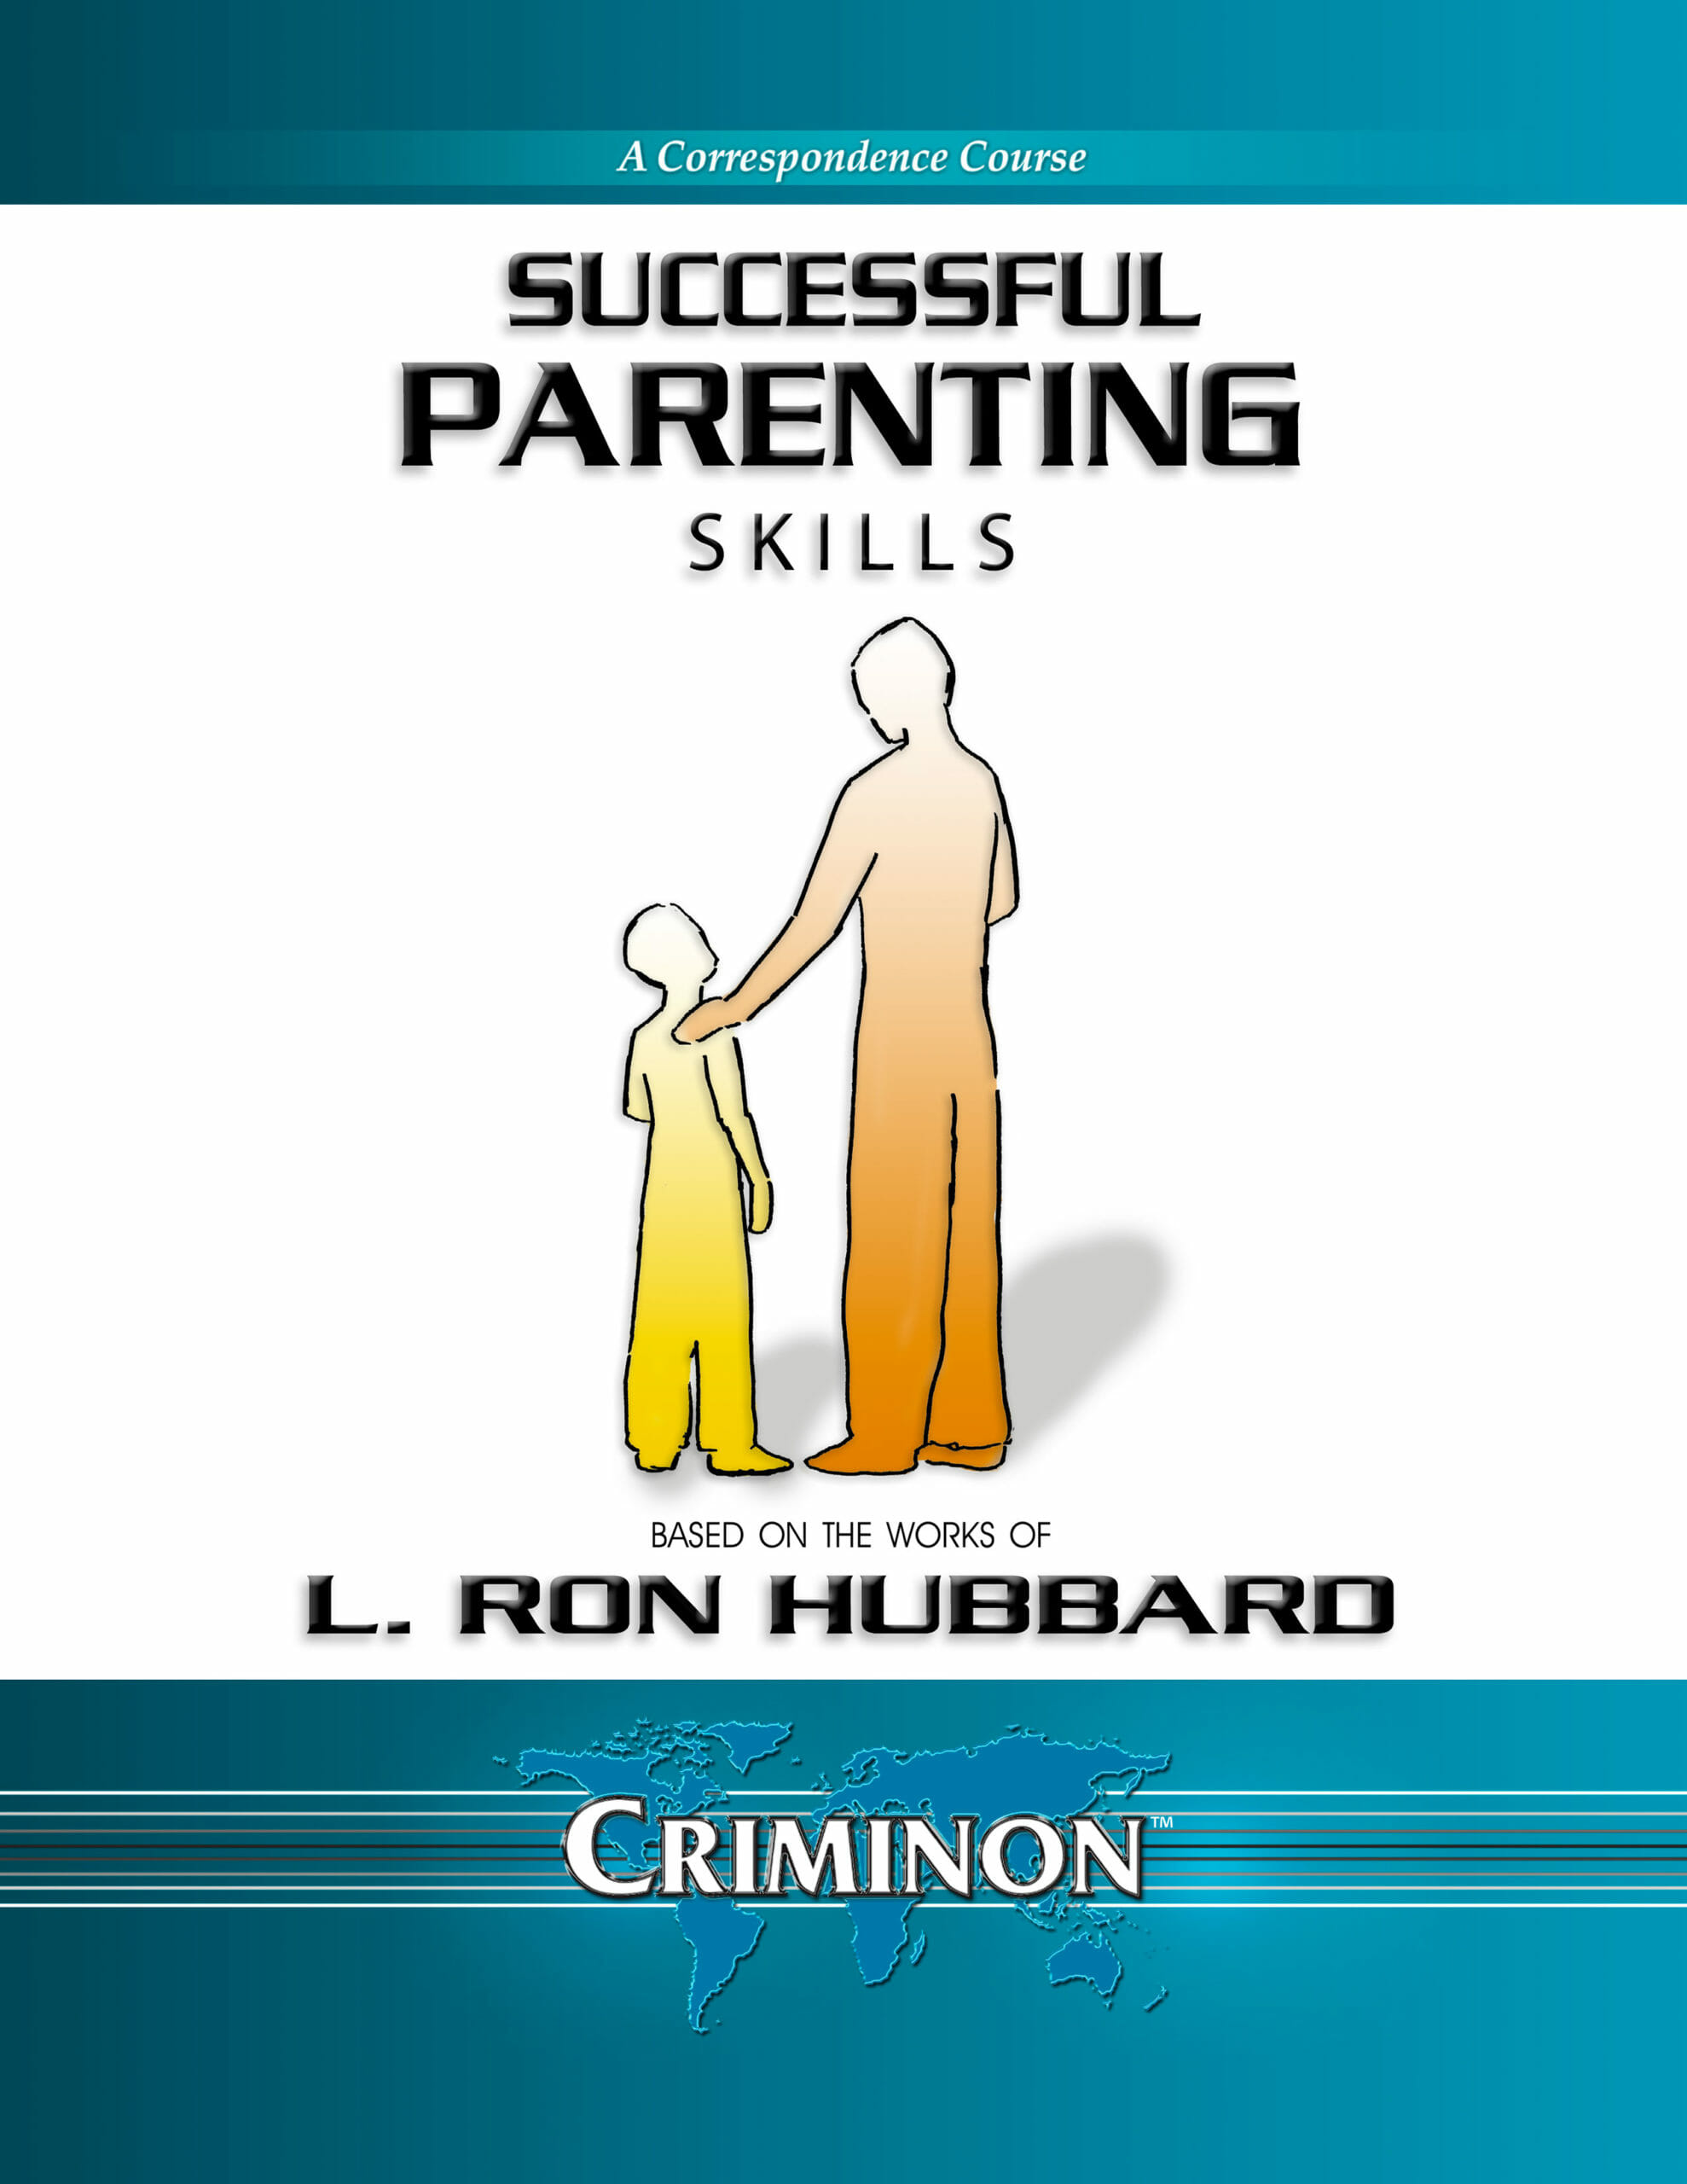 Successful Parenting Course - Criminon